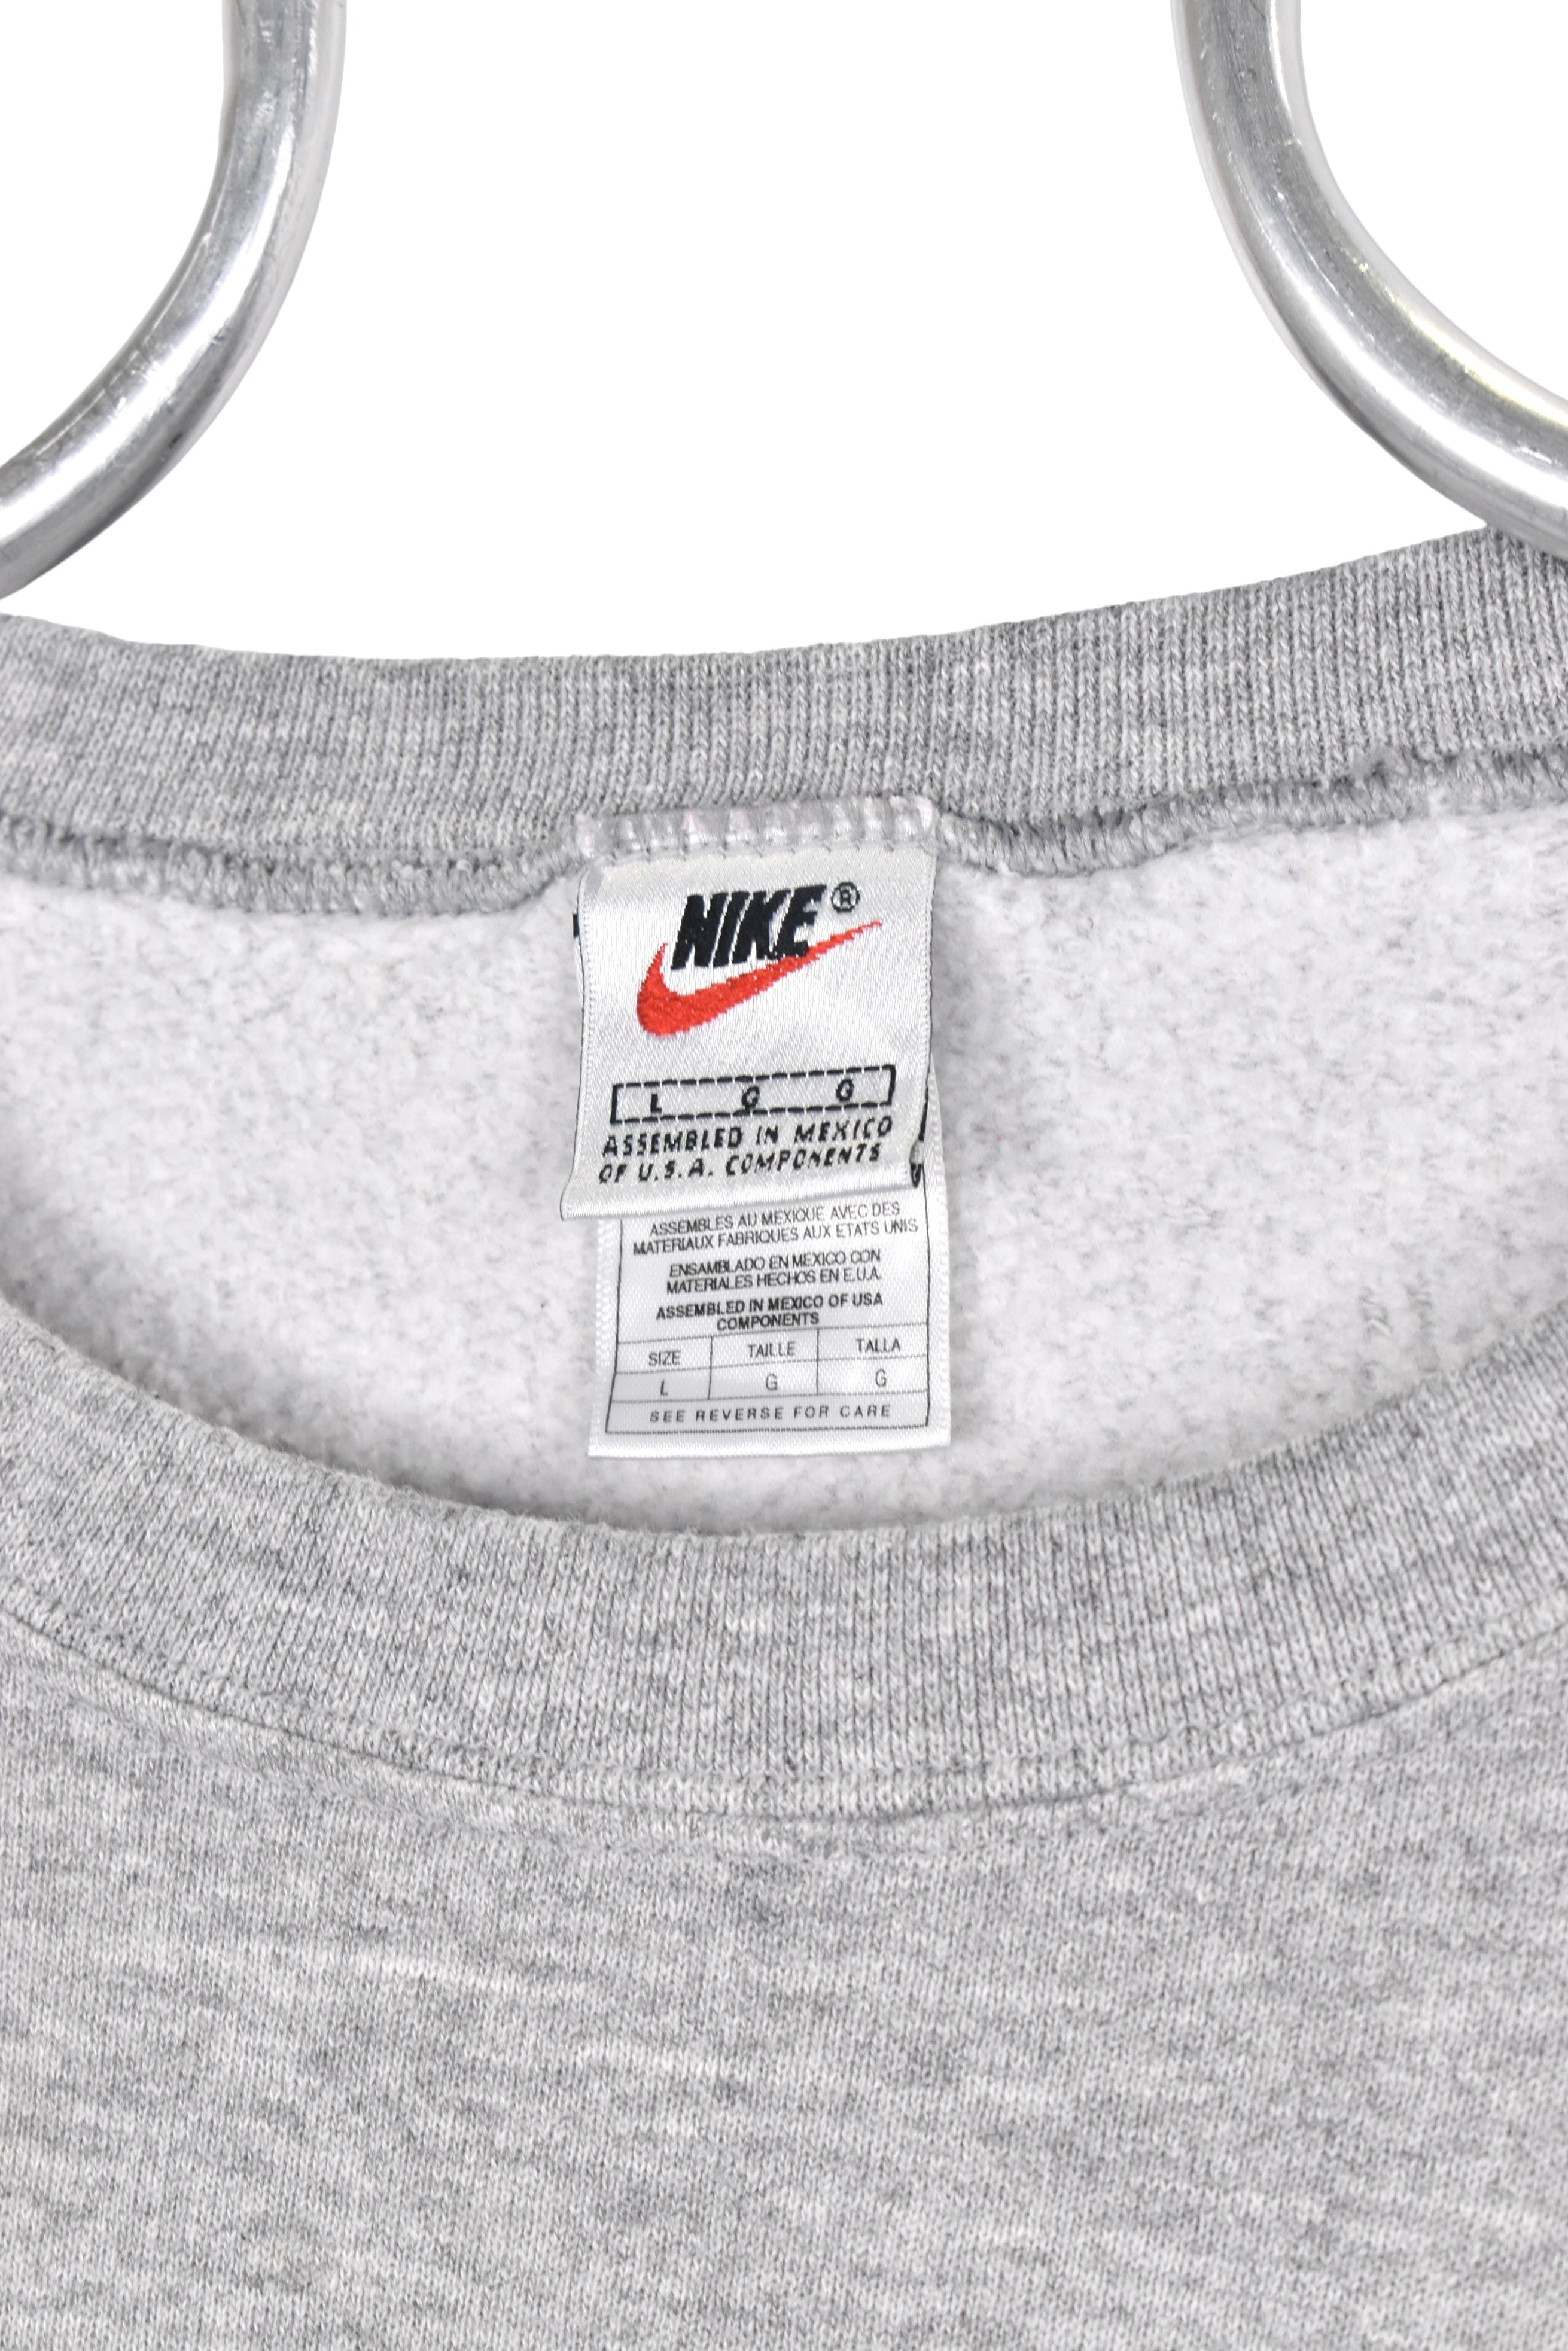 Vintage Nike sweatshirt, grey embroidered crewneck - AU Large